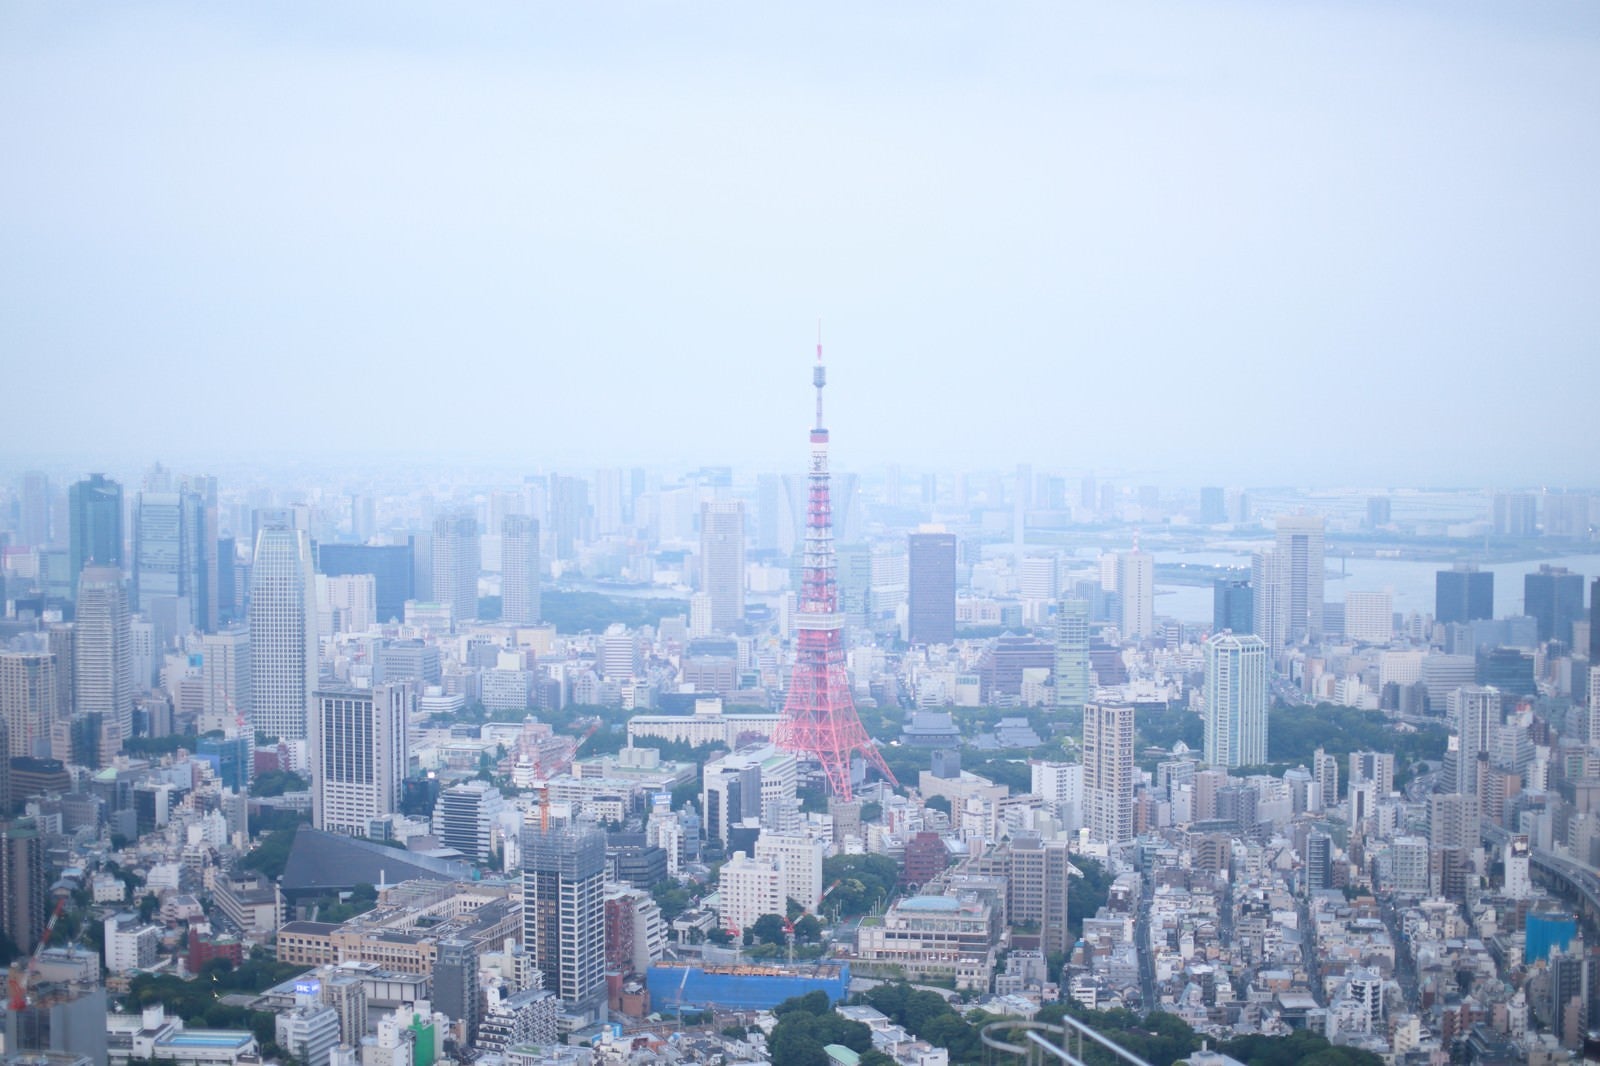 「淡い雰囲気の東京タワー周辺」の写真